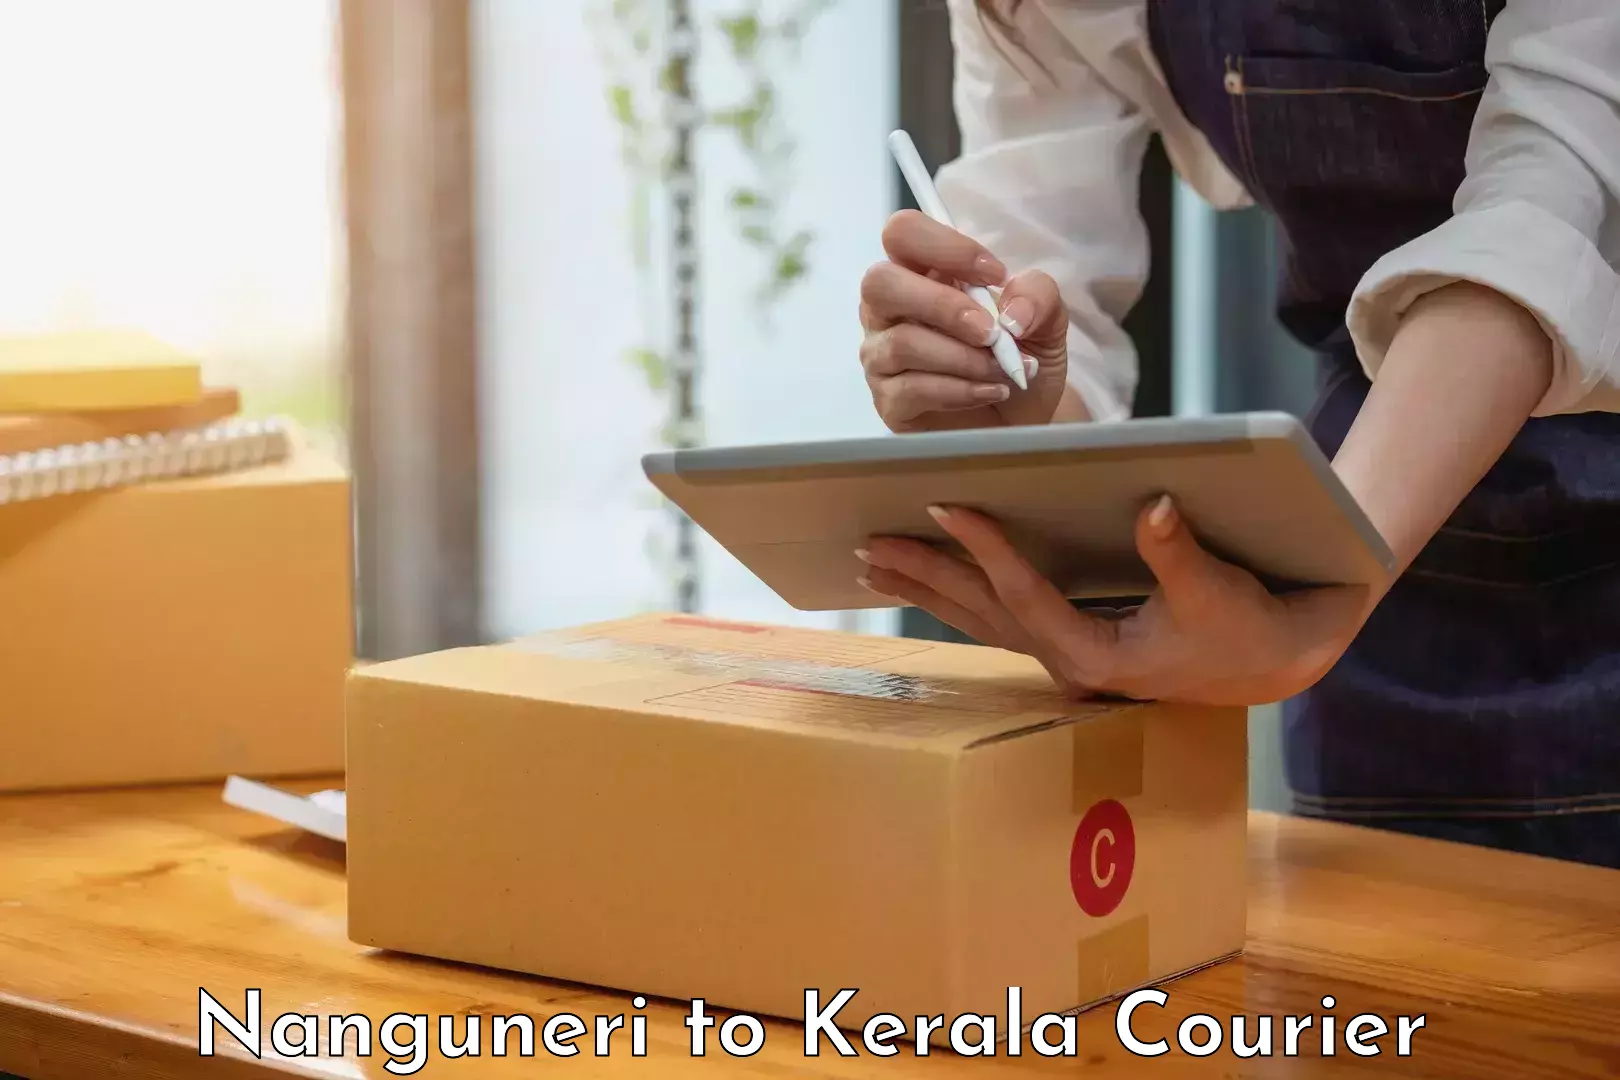 Customer-friendly courier services Nanguneri to Thrissur